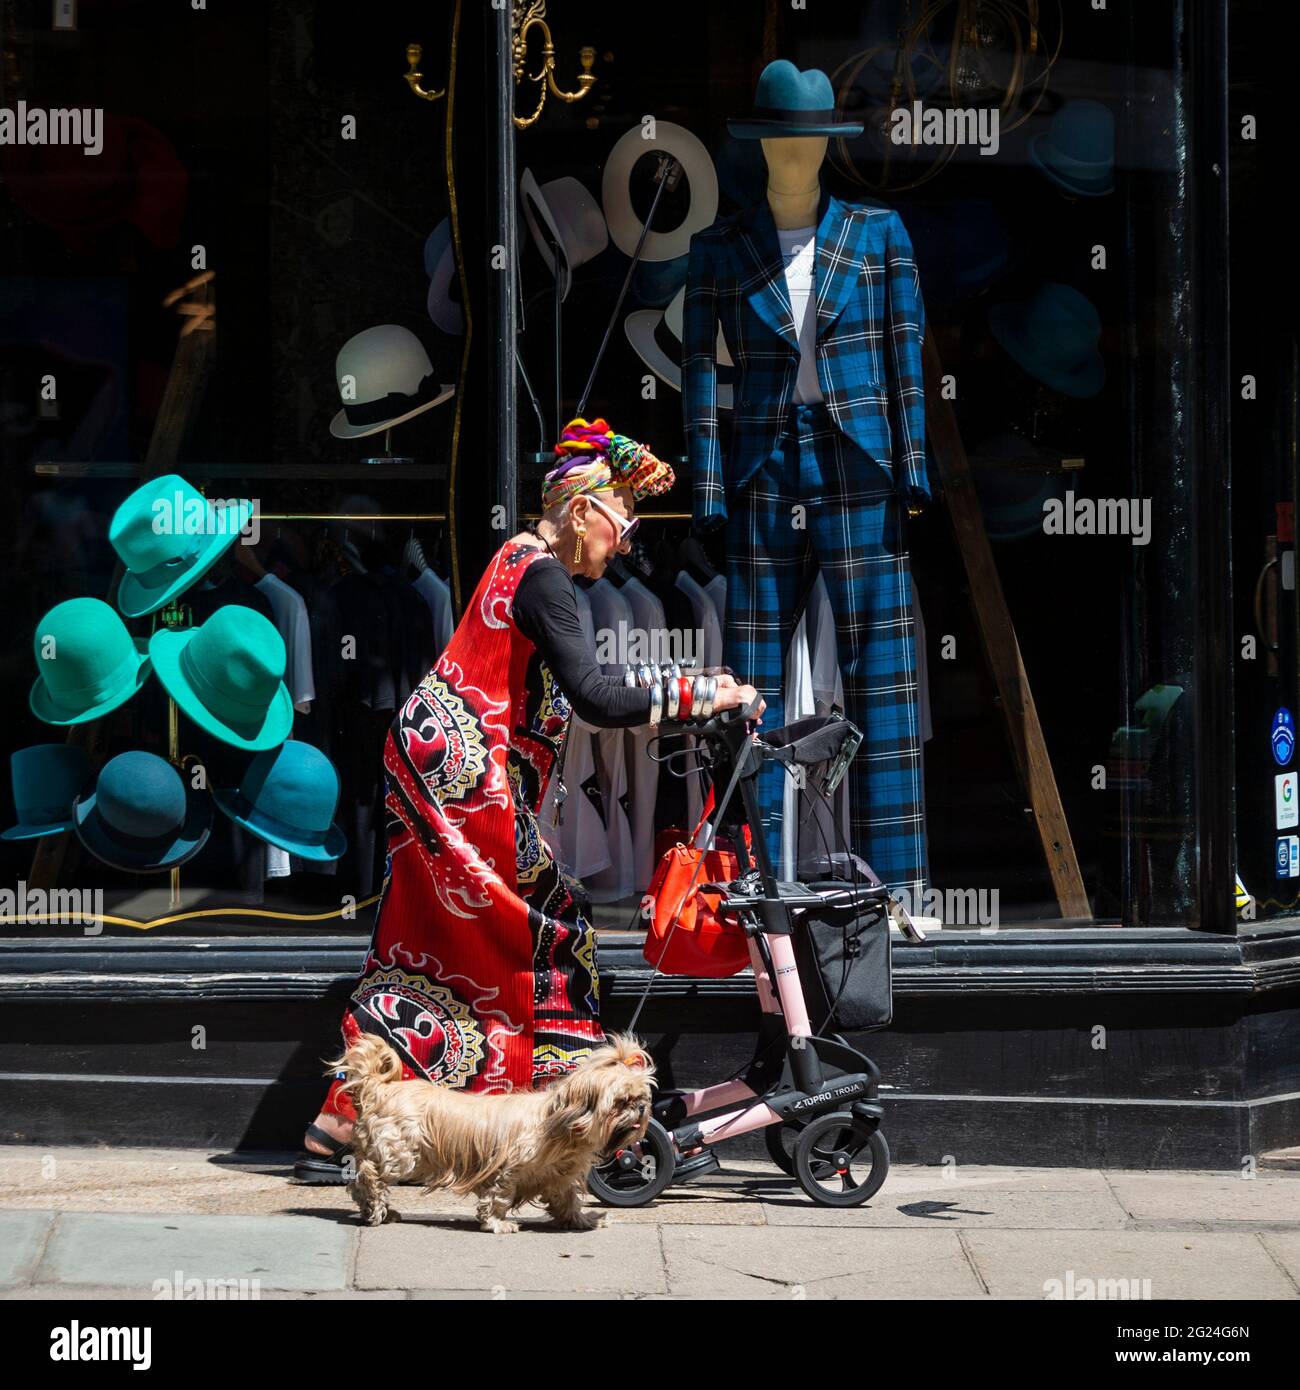 Londres, Royaume-Uni. 8 juin 2021. Météo au Royaume-Uni - une femme élégamment habillée marche son chien en passant par un magasin de chapeau près de Cambridge Circus lors d'un après-midi chaud et ensoleillé, quand les températures ont augmenté à 25 °C dans la capitale. Credit: Stephen Chung / Alamy Live News Banque D'Images